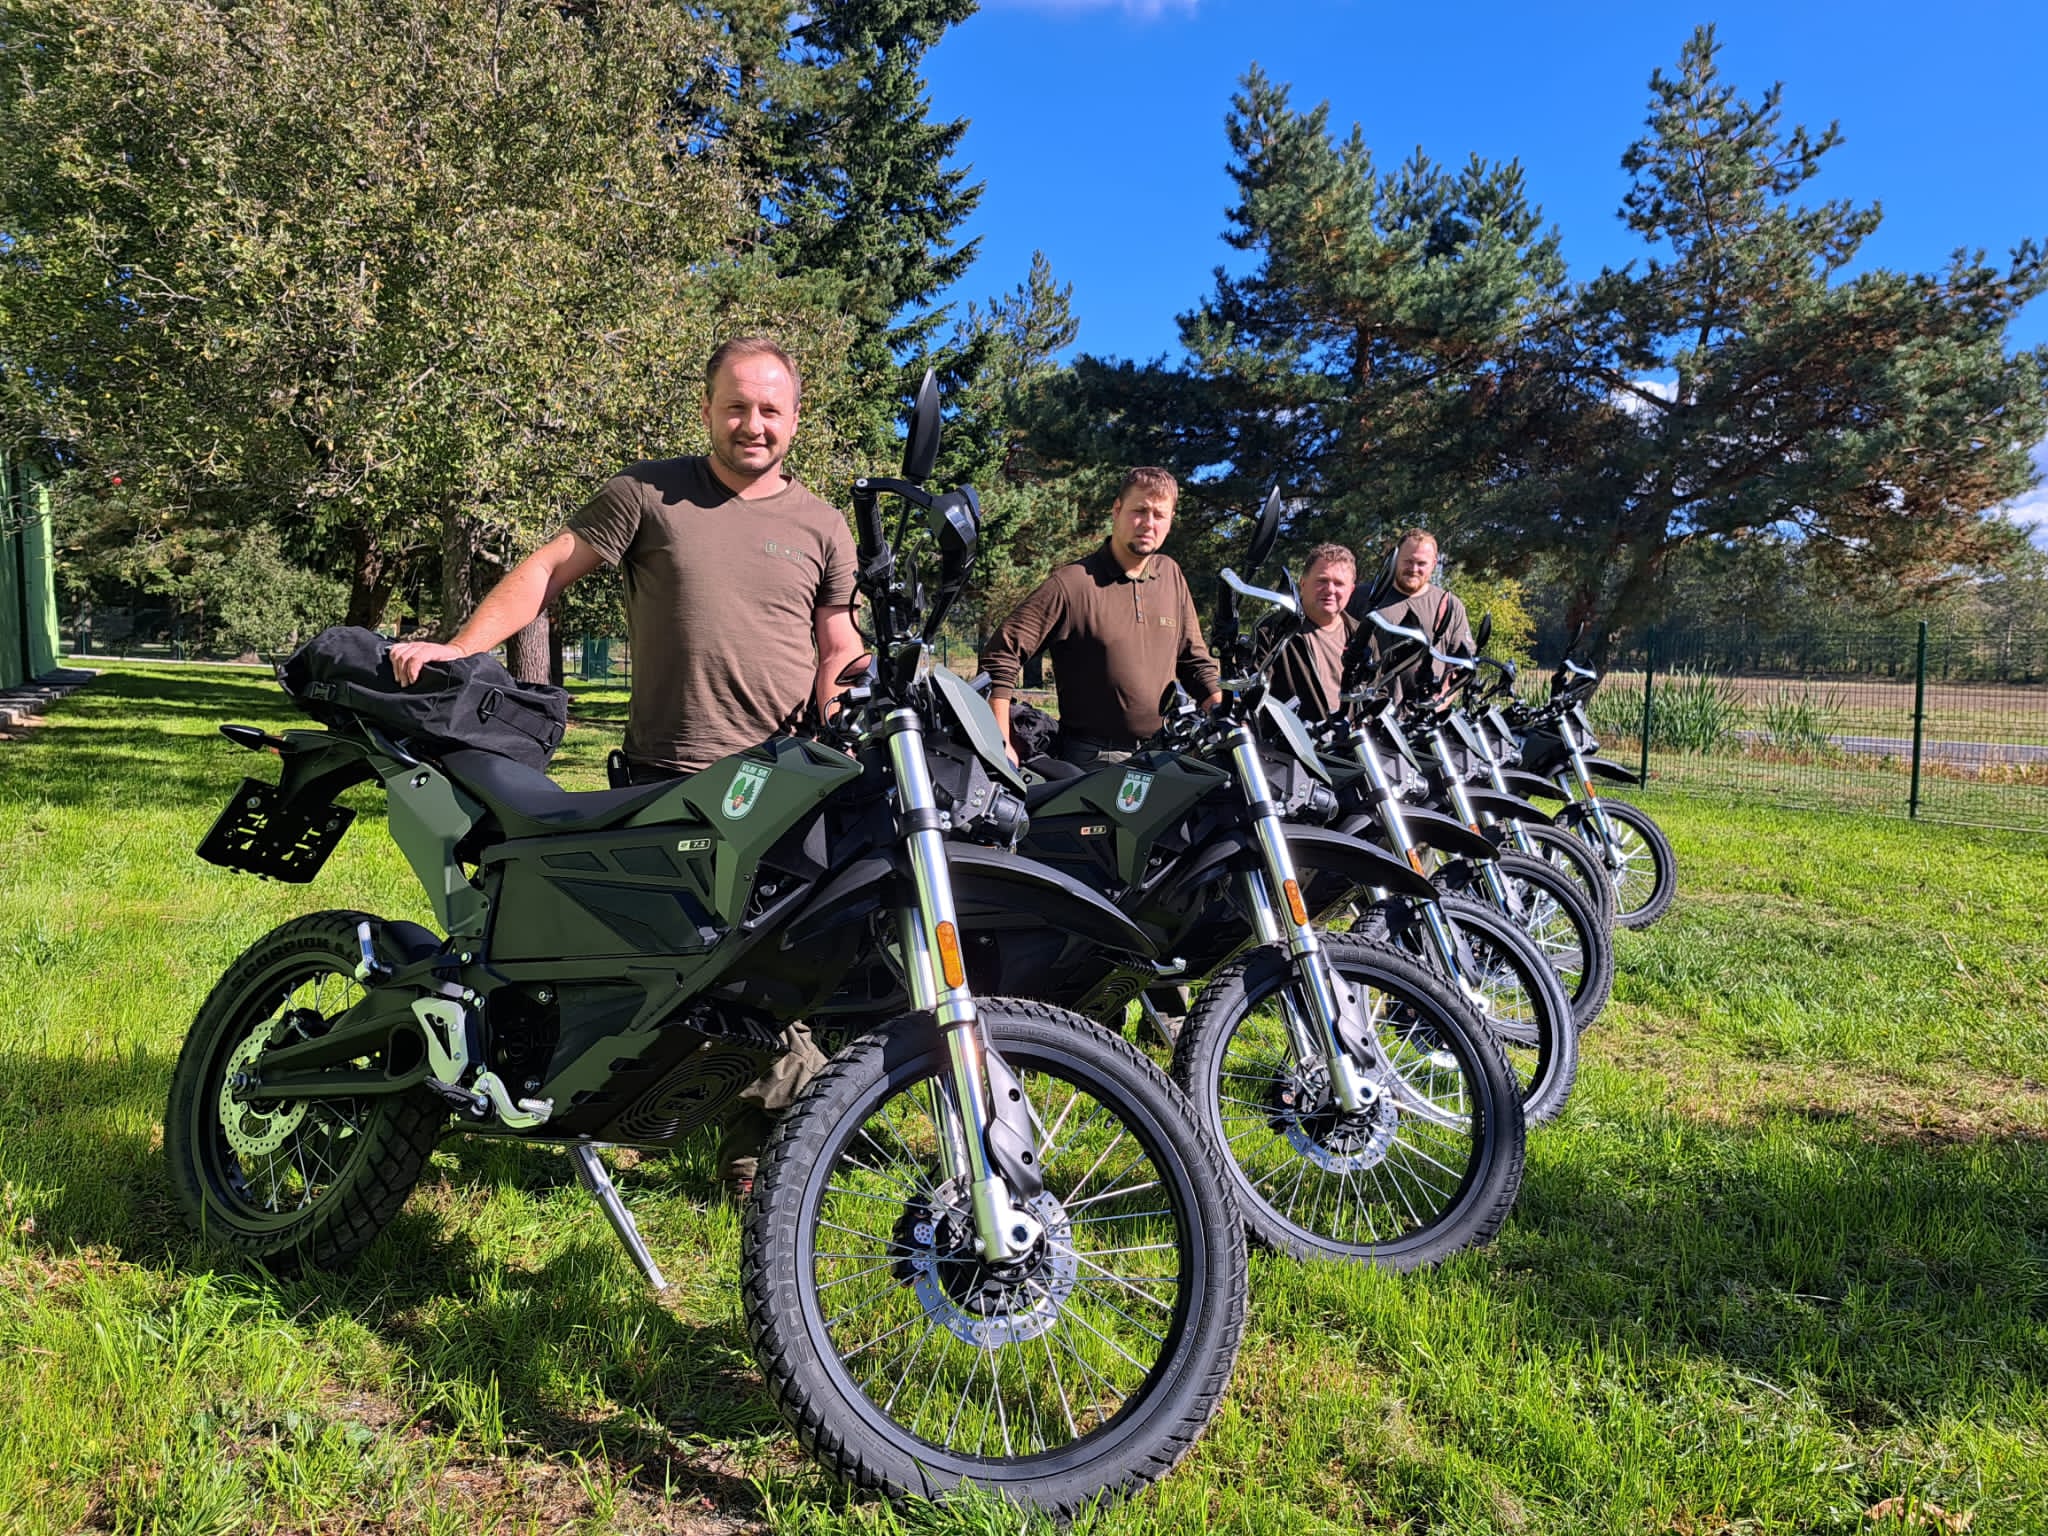 Vojenské lesy a majetky SR rozšířily svůj vozový park o motocykly Zero FX